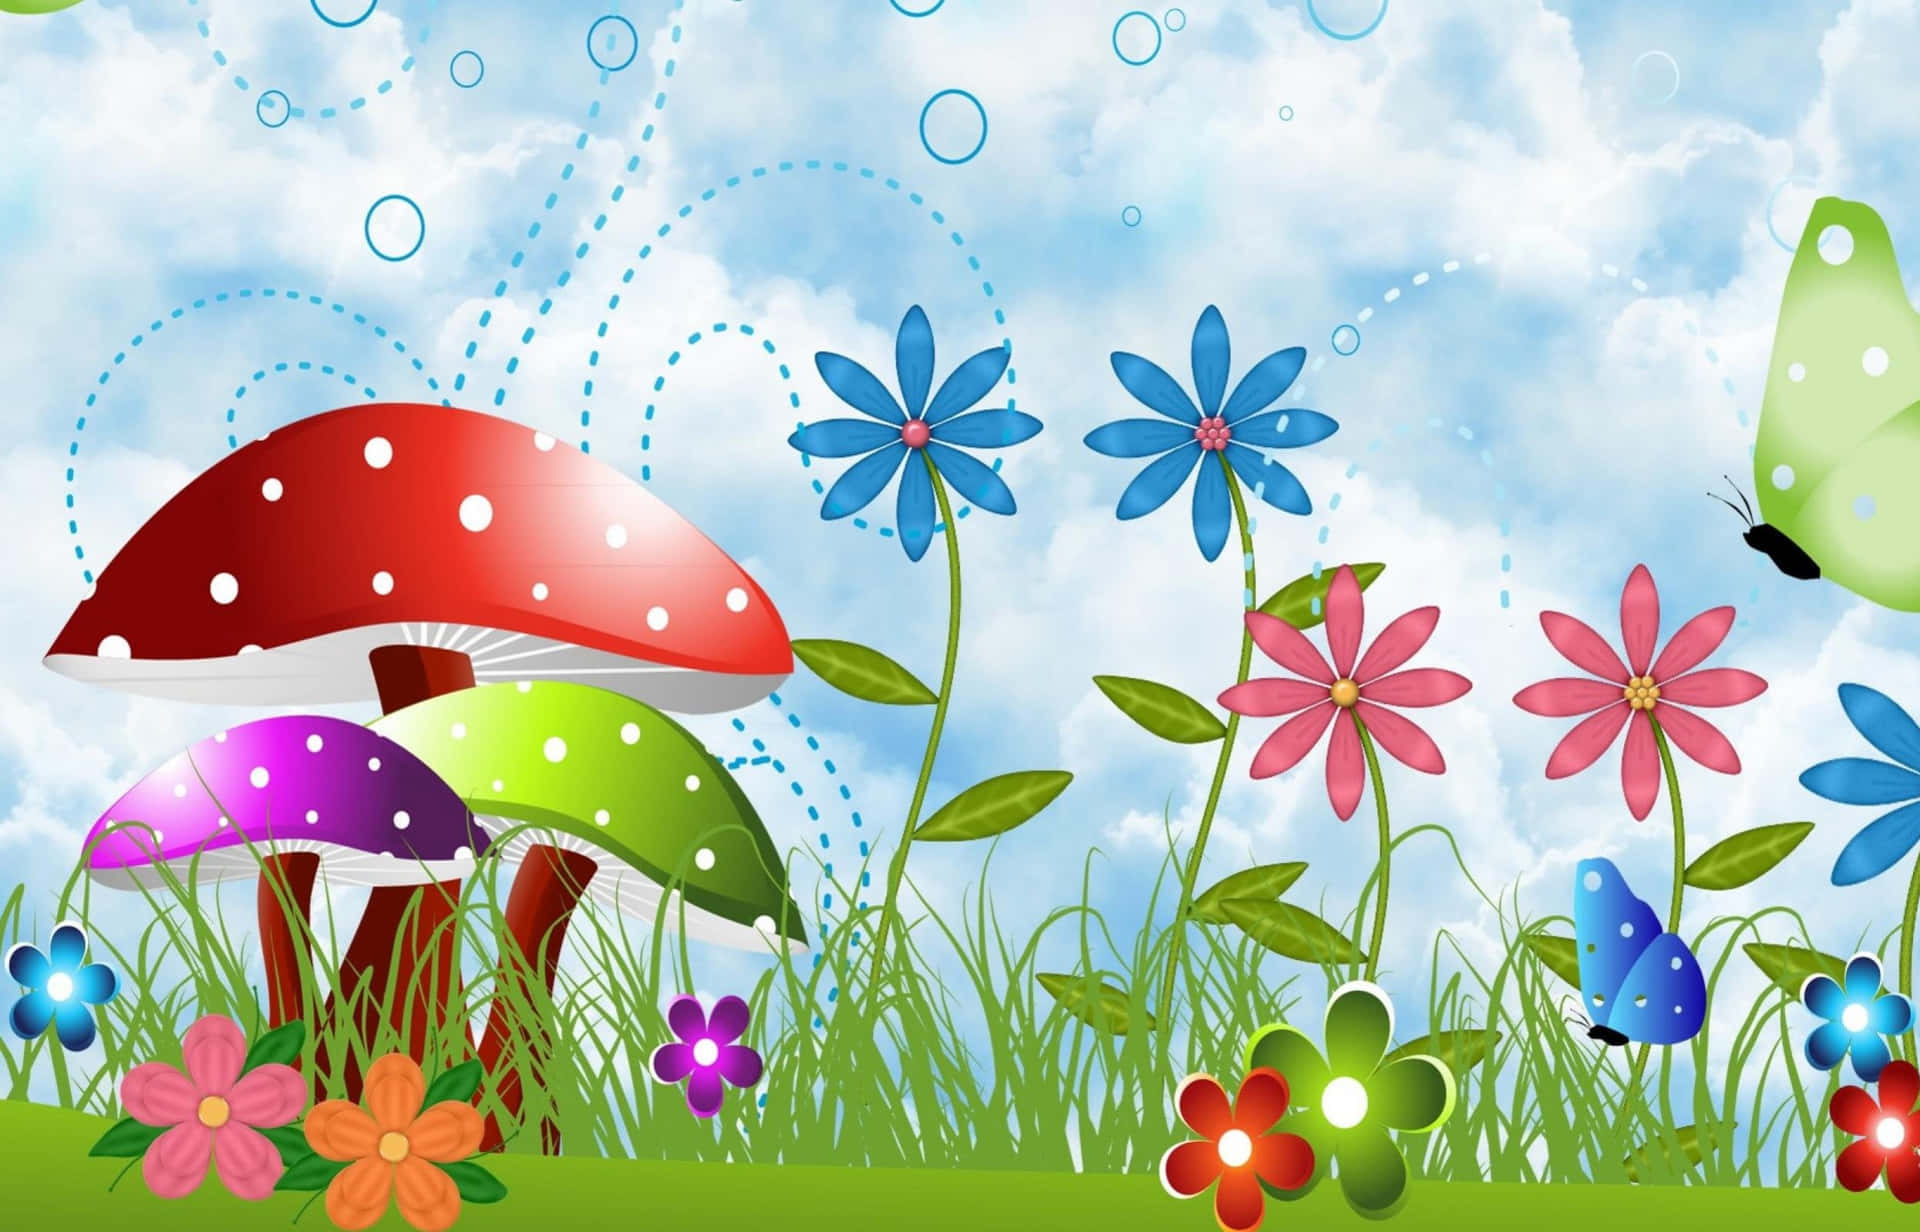 Enchanting Kawaii Mushroom Illustration Wallpaper